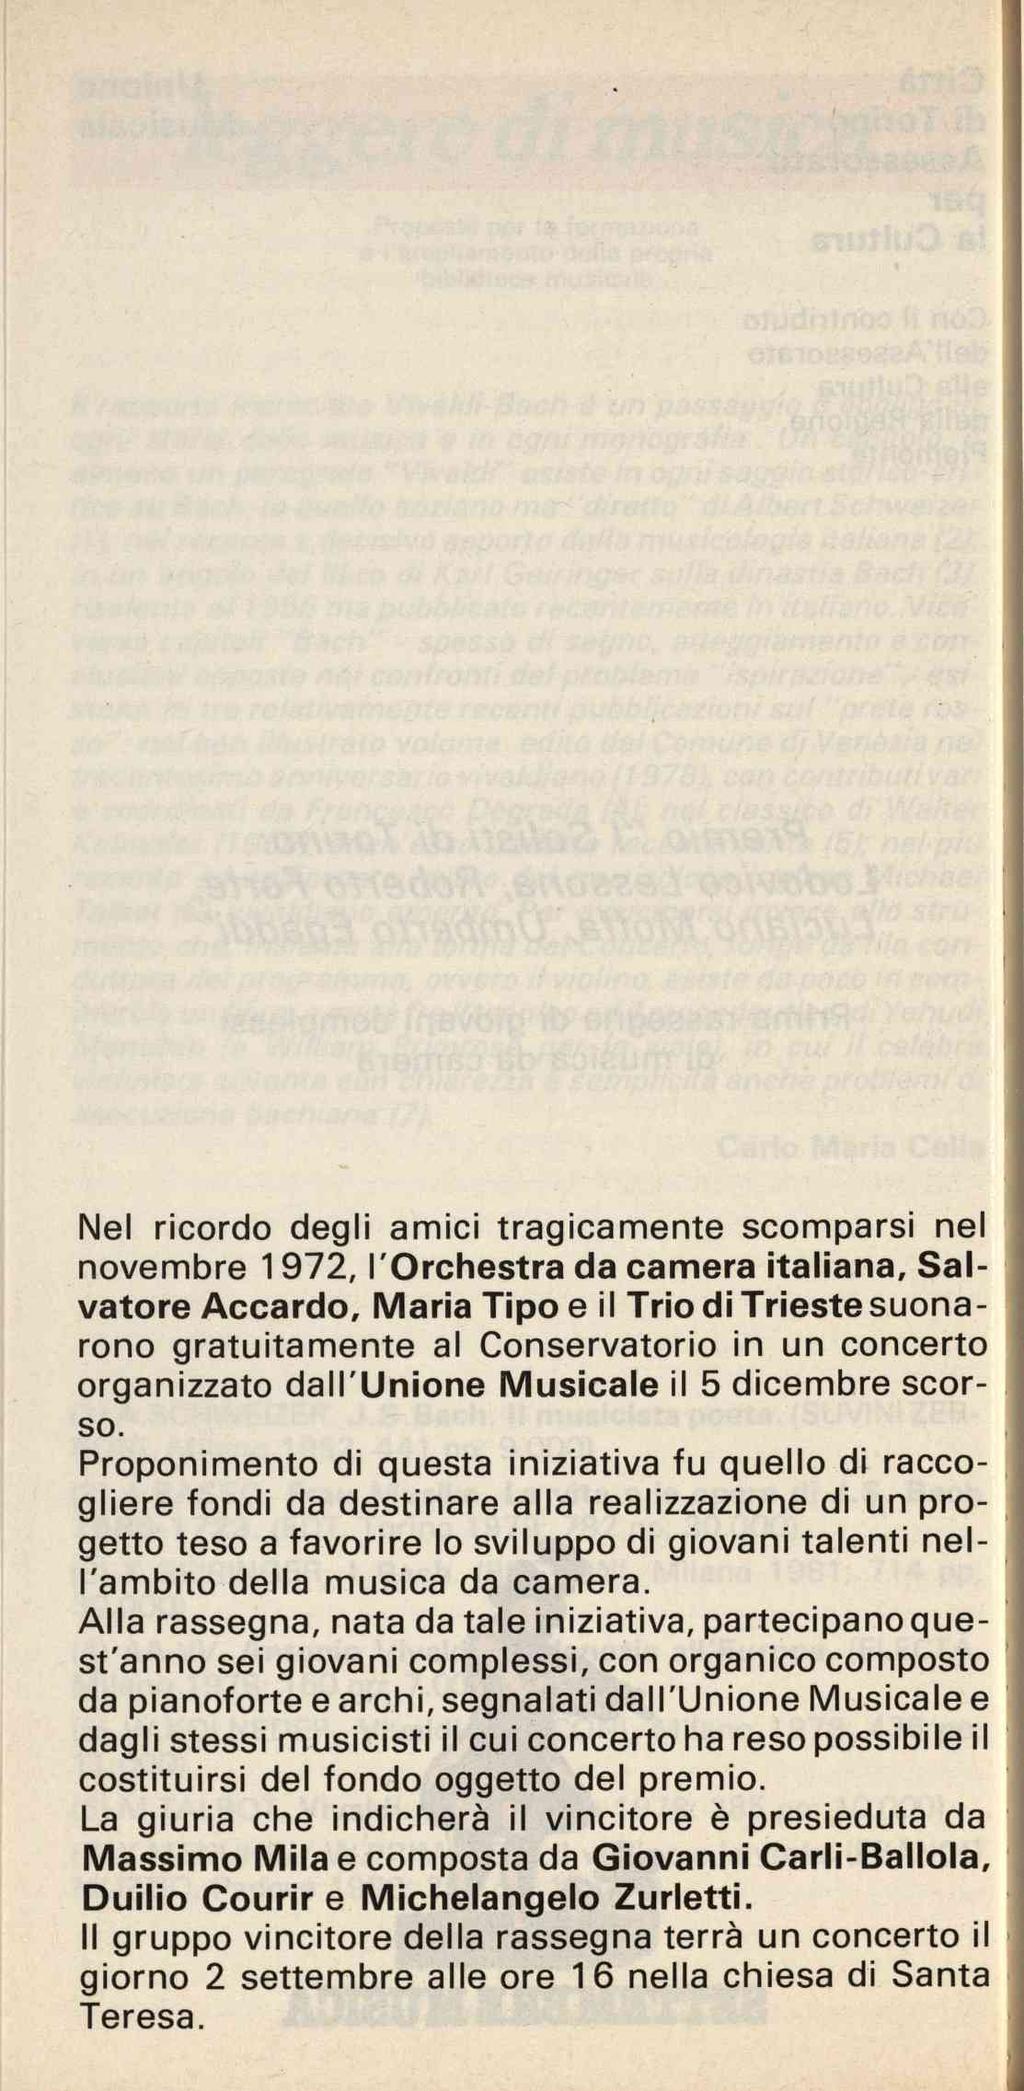 Nel ricordo degli amici tragicamente scomparsi nel novembre 1972, l'orchestra da camera italiana.